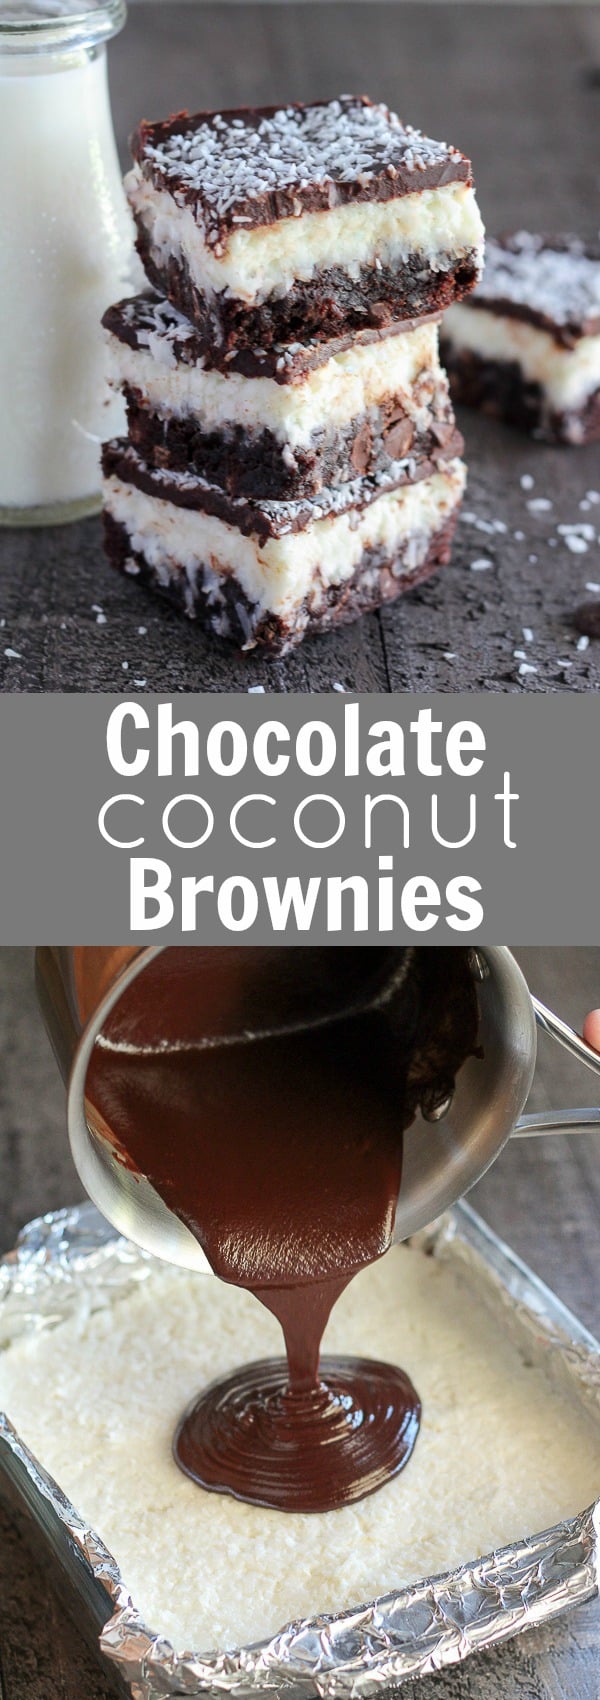 Coconut brownies.